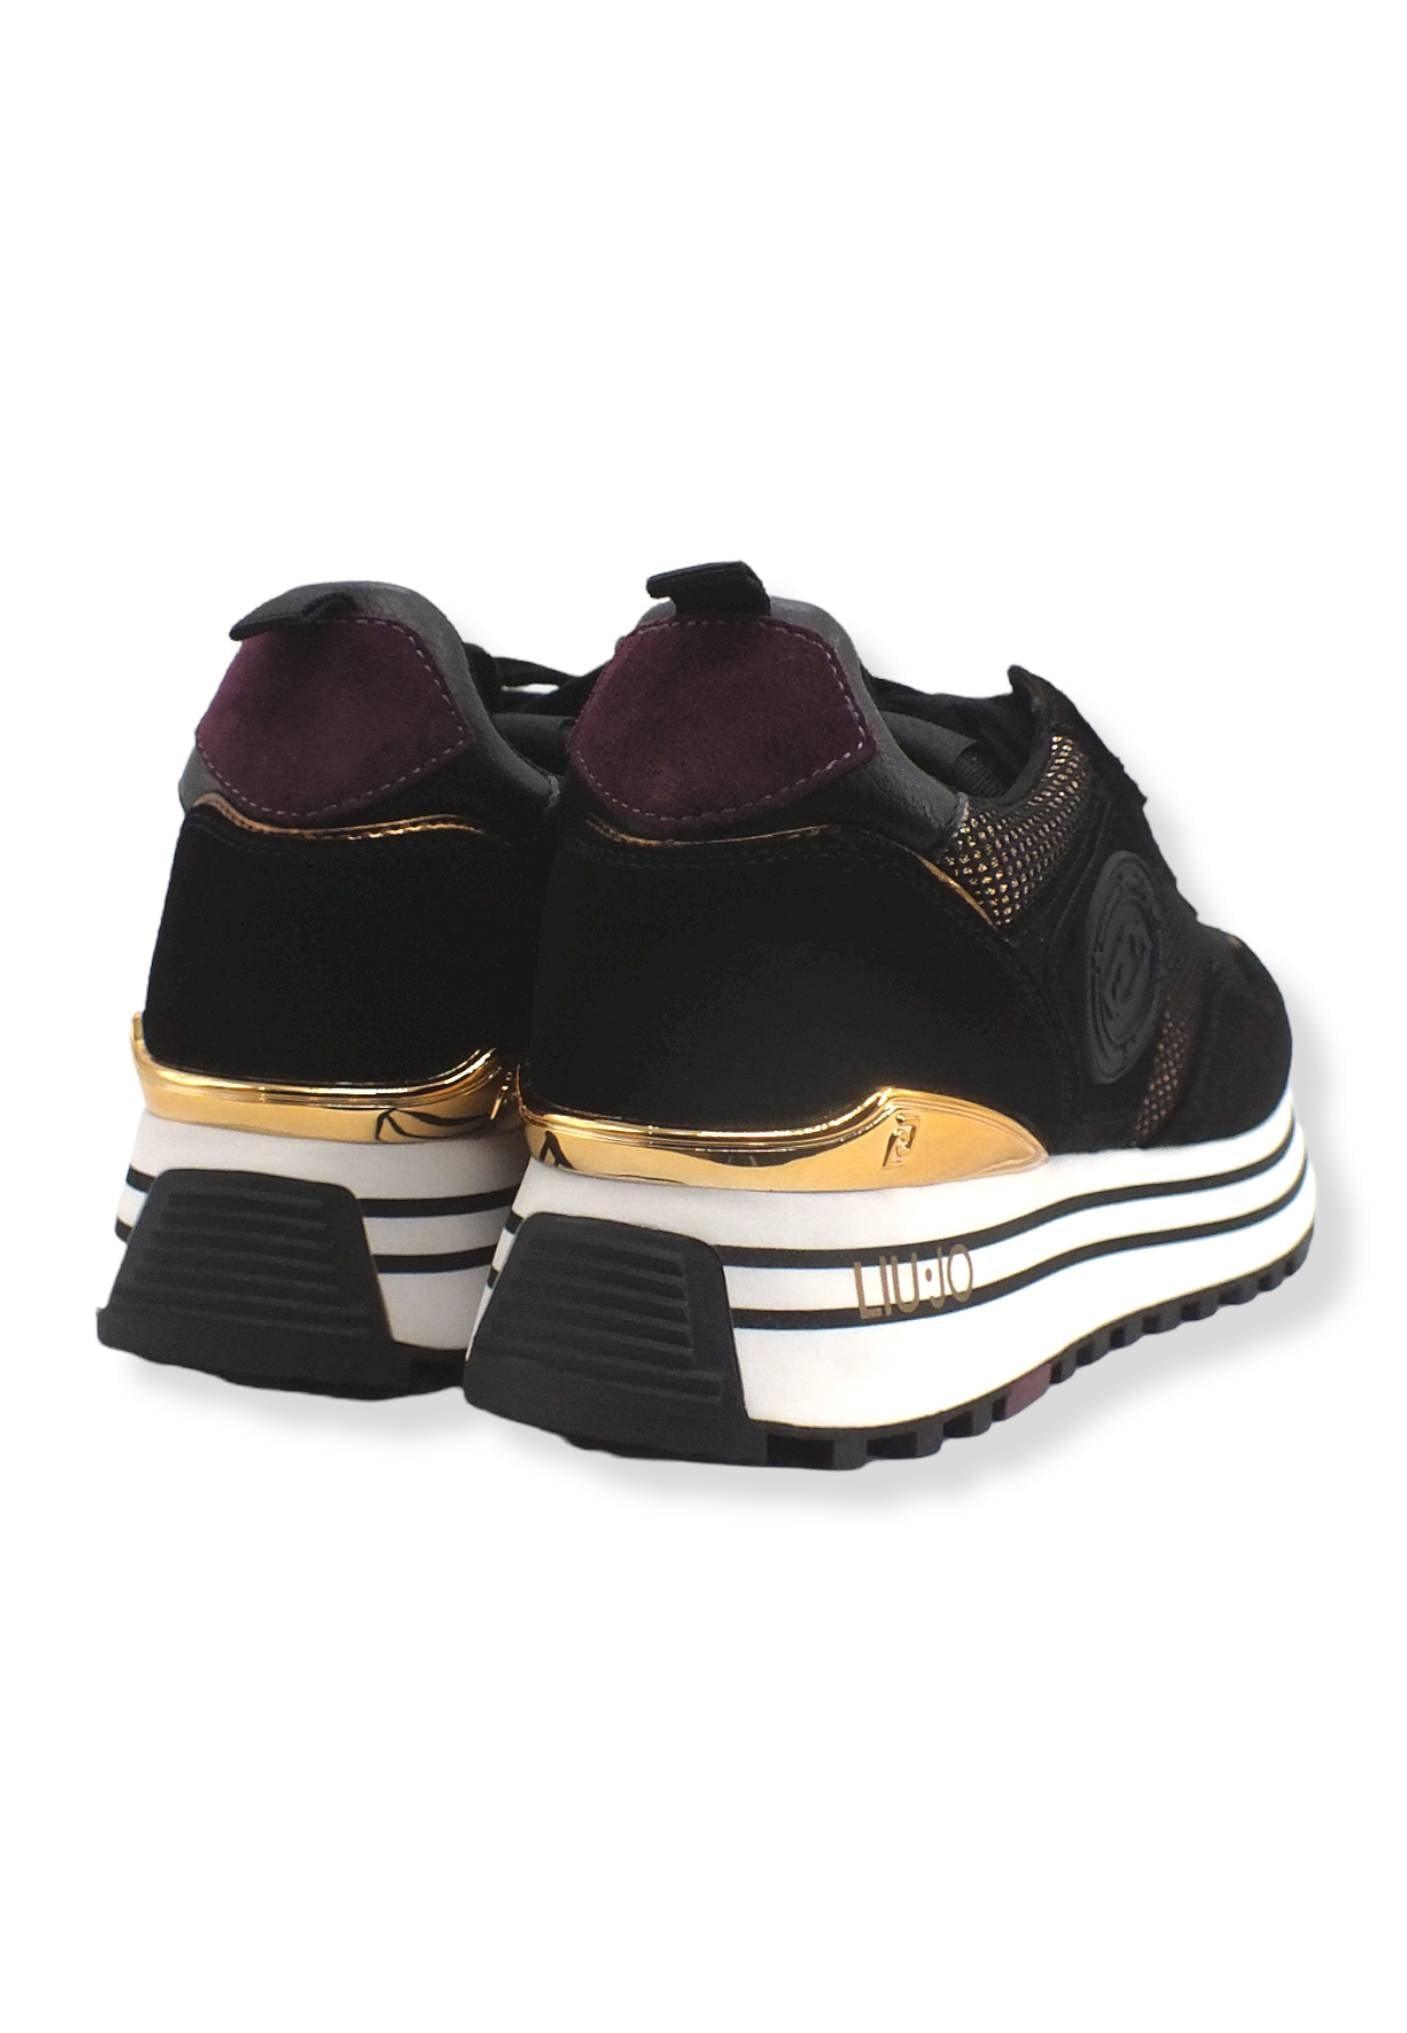 LIU JO Maxi Wonder 01 Glitter Sneaker Donna Black BF2095PX253 - Sandrini Calzature e Abbigliamento